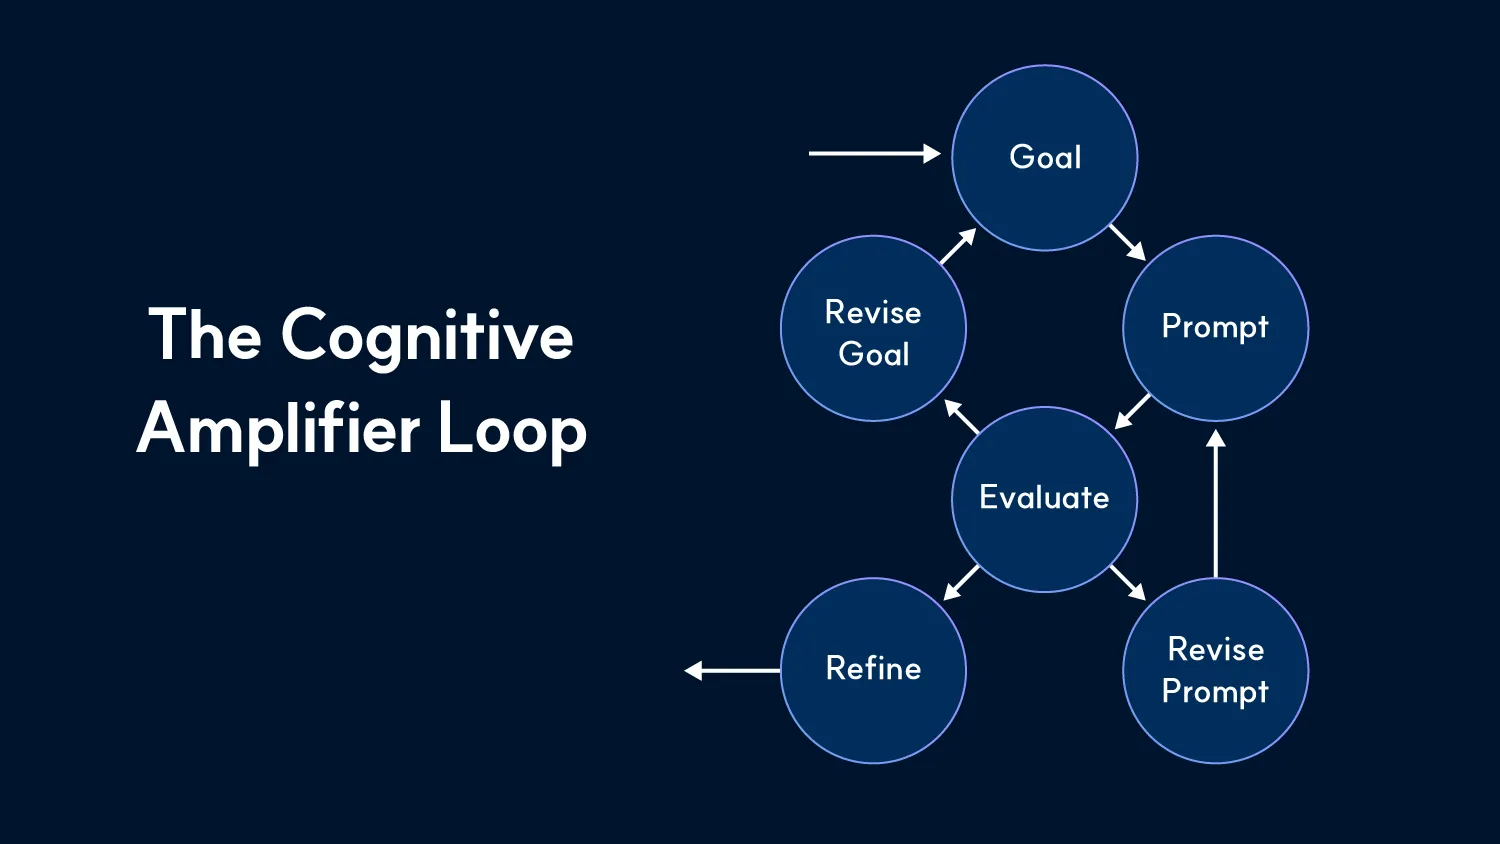 인지능력 증폭 루프(Cognitive Amplifier Loop, CAL) 도식. 목표부터 최종으로 다듬은 결과까지 어떤 과정 안에 있는지 볼 수 있다.